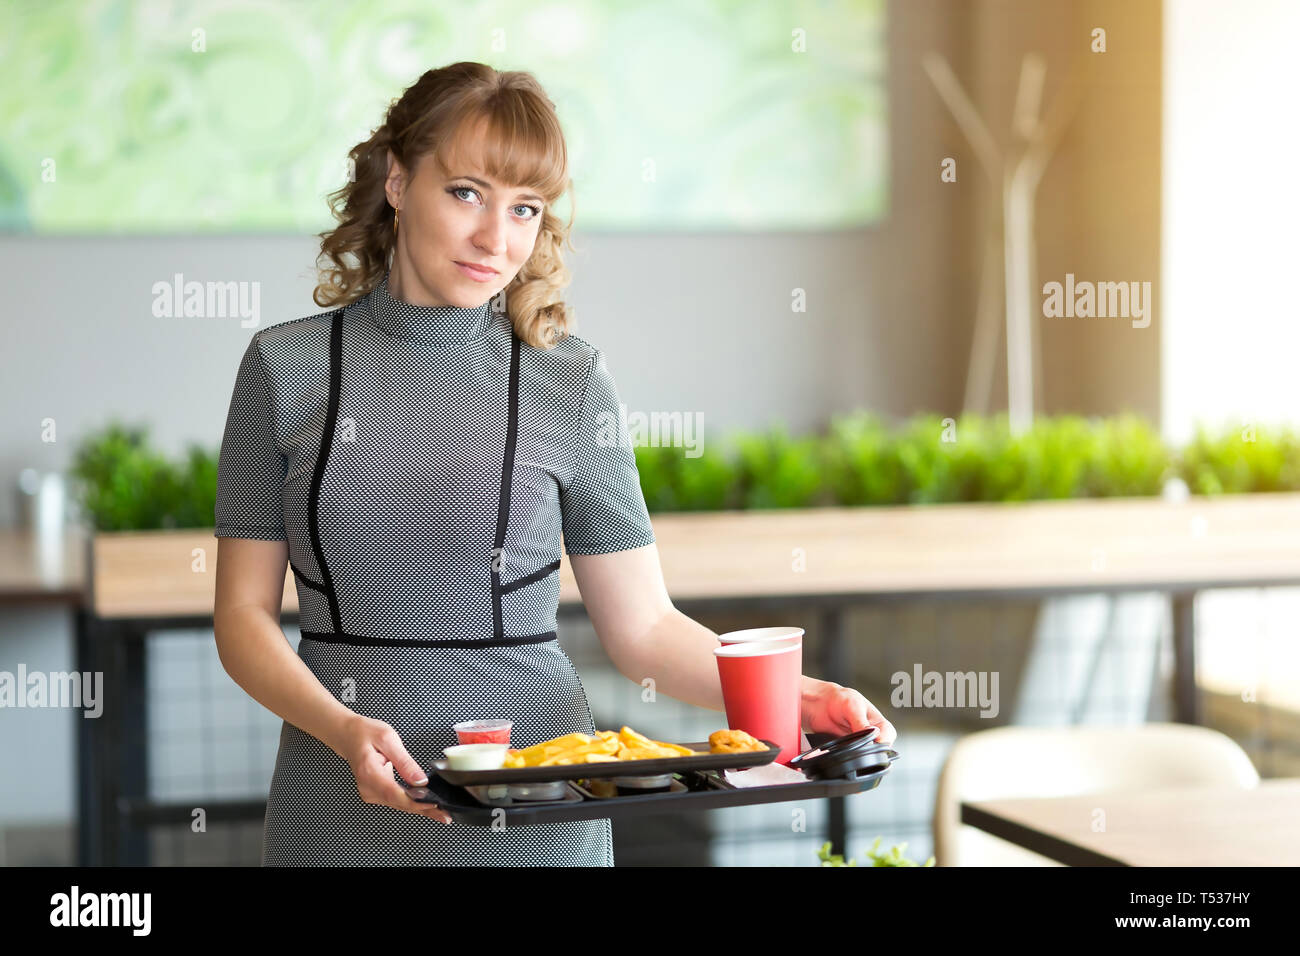 Eine Frau von 30-35 Jahre alt ist, in den Händen ein Dressing auf dem Saft ist Wasser essen Sushi rollen Pommes frites. Stockfoto